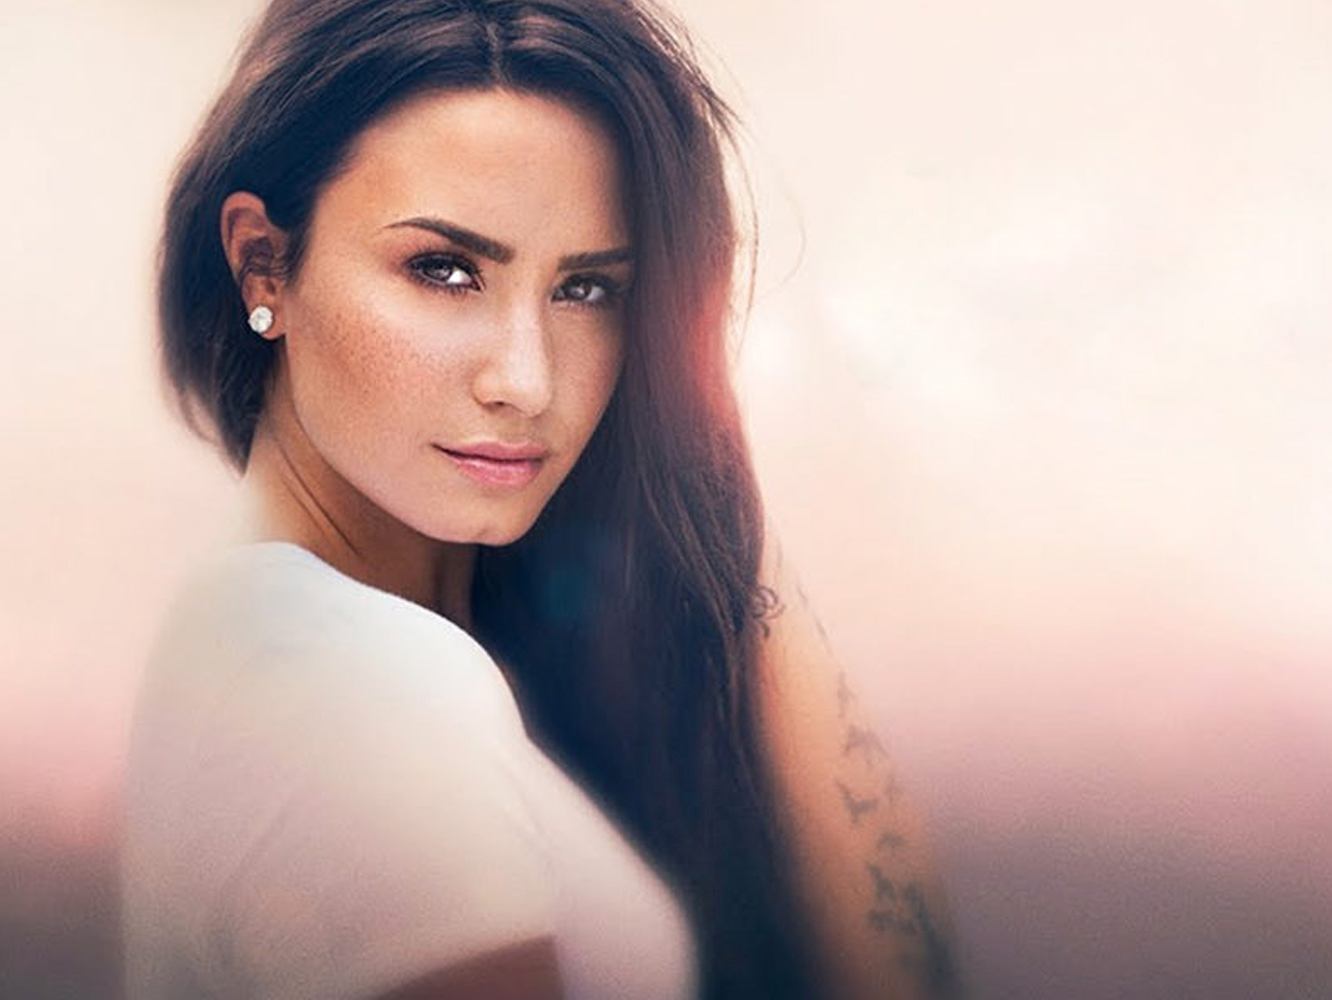  Youtube seguirá adelante con el documental de Demi Lovato, a pesar de su sobredosis